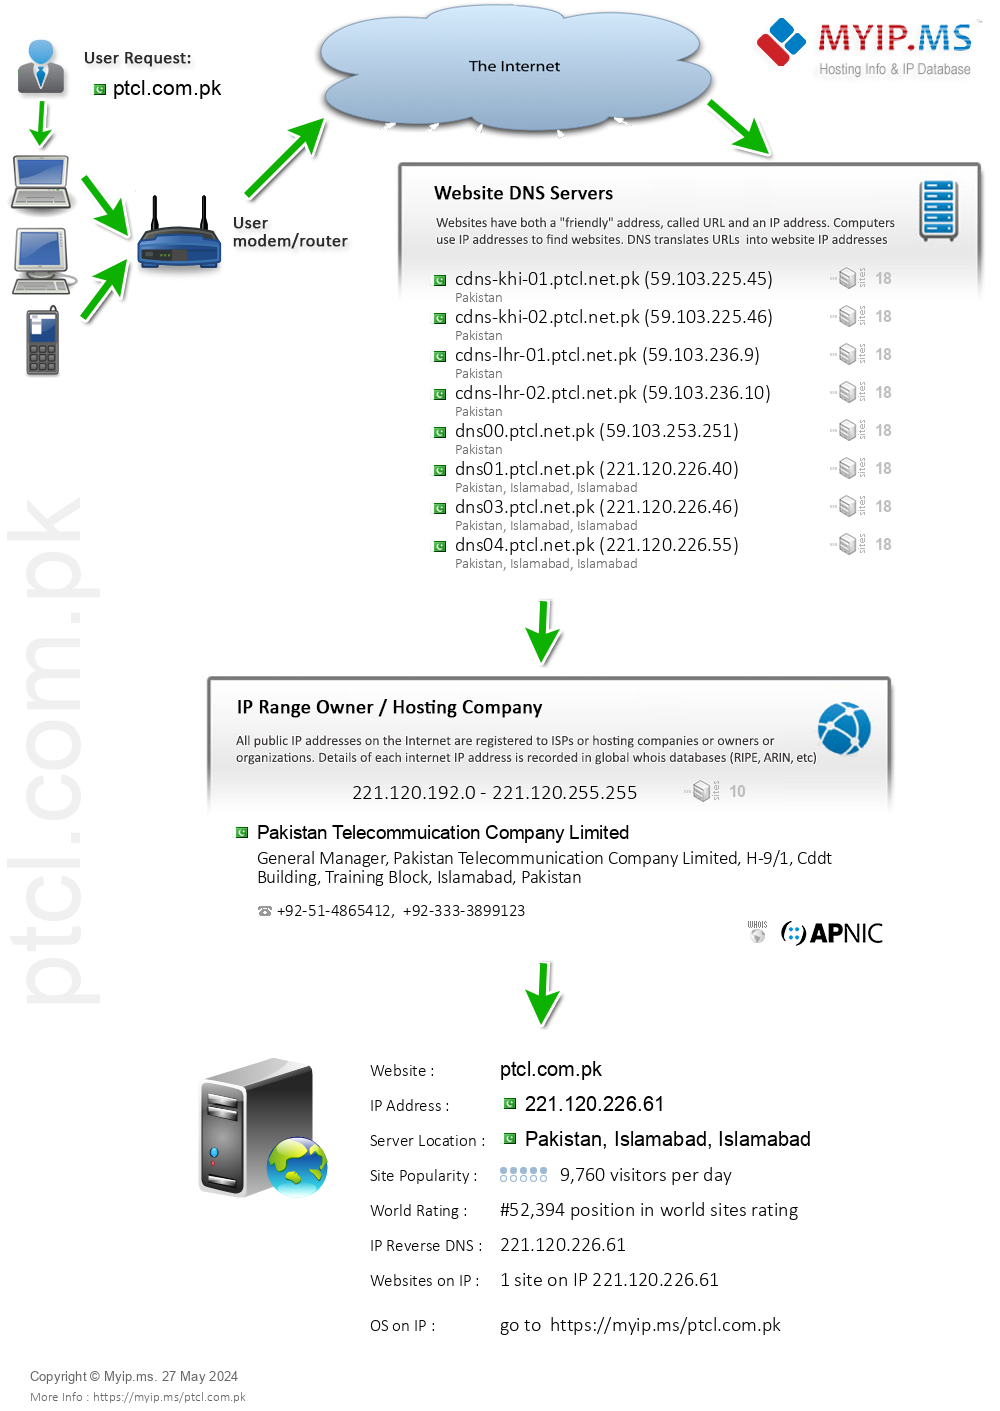 Ptcl.com.pk - Website Hosting Visual IP Diagram